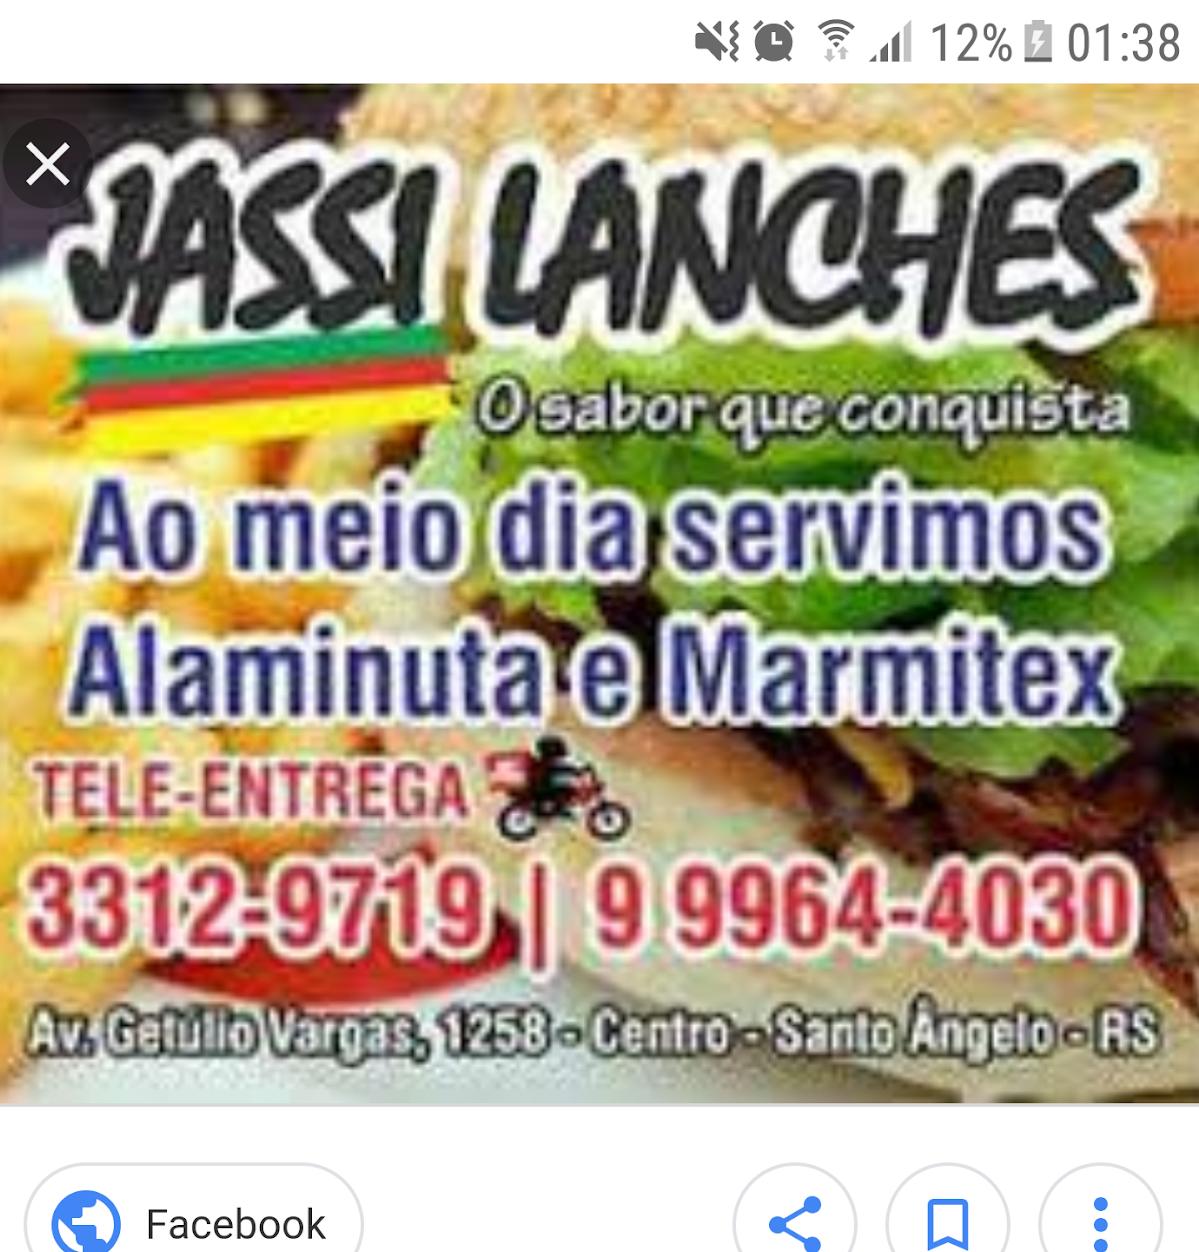 Jassi Lanches - Lancheria, restaurante